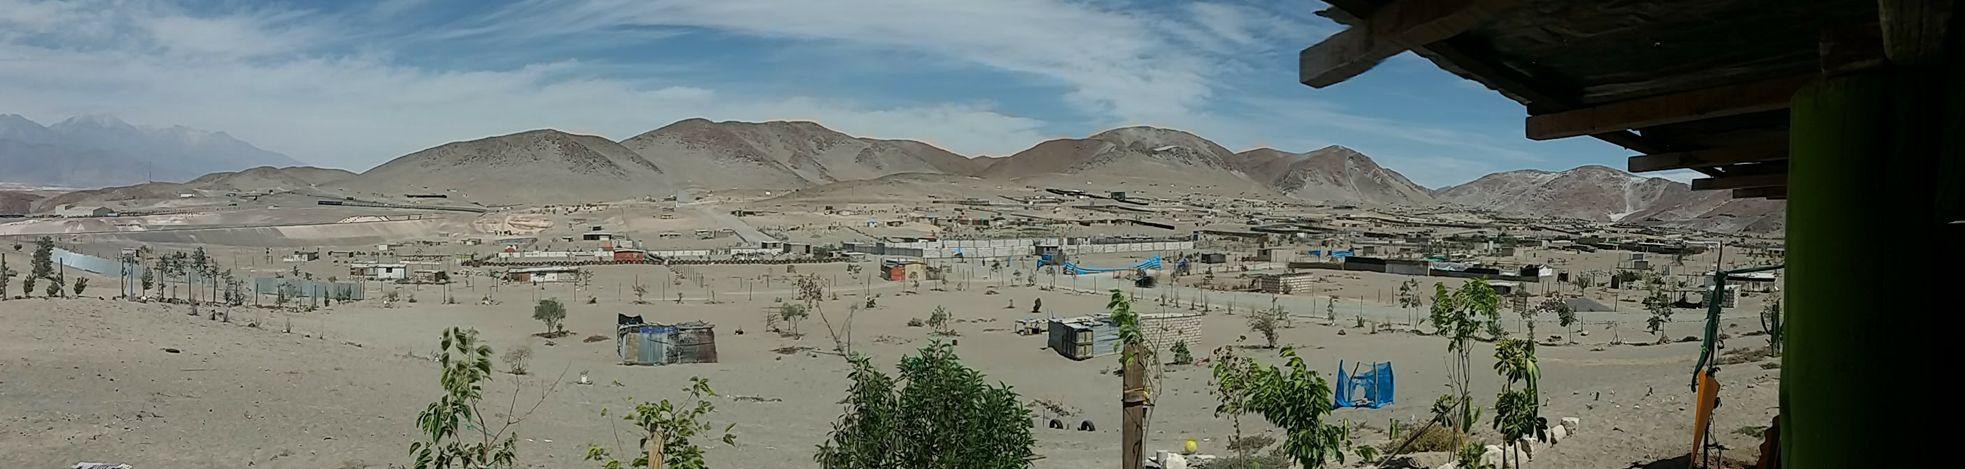 Gobierno Regional de Arequipa gana juicio a invasores tras 8 años de litigio